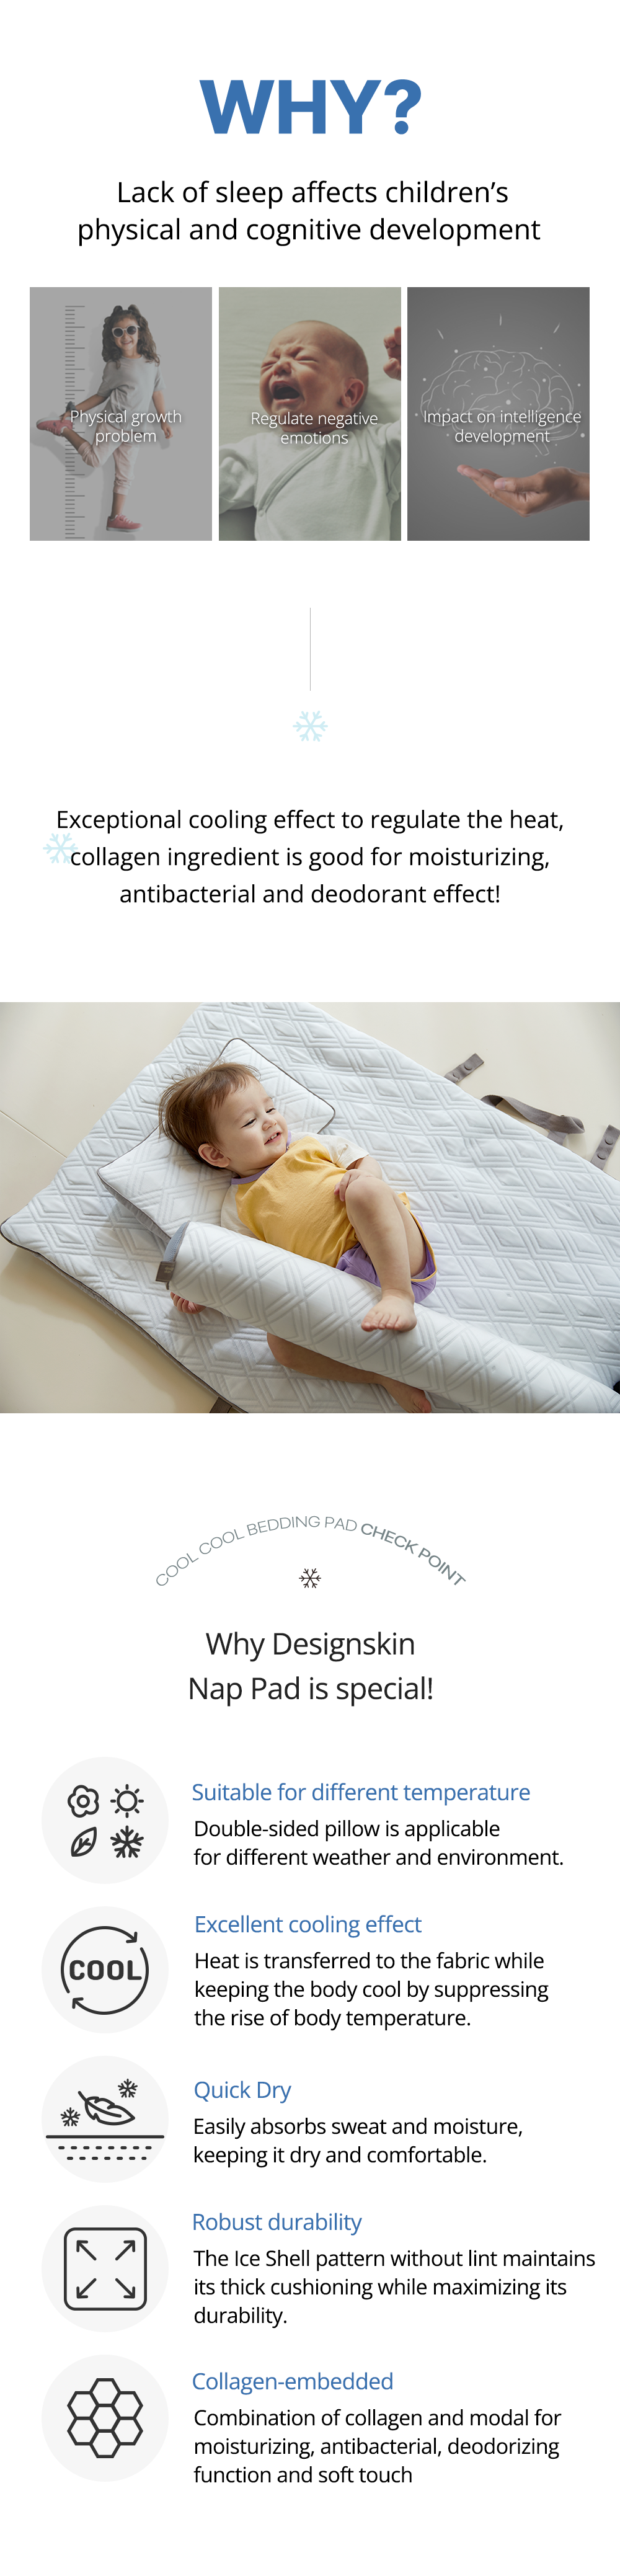 baby cooling Nap pad designskin